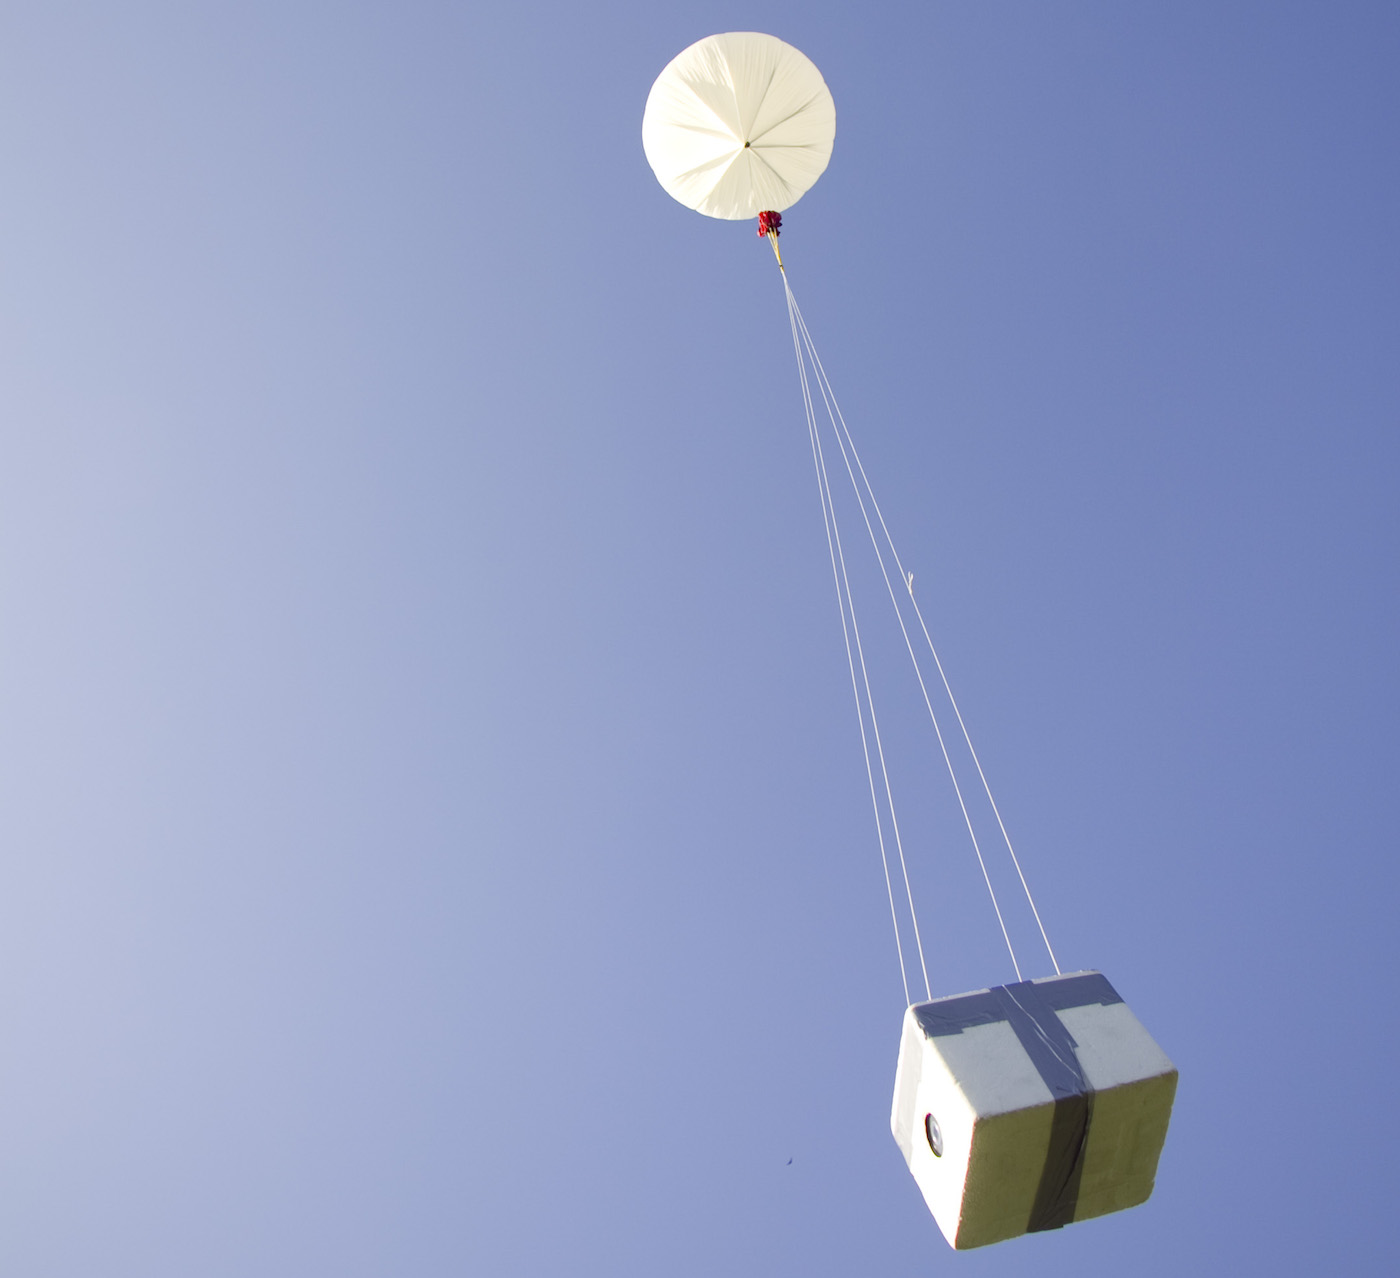 A High-Altitude Balloon launch